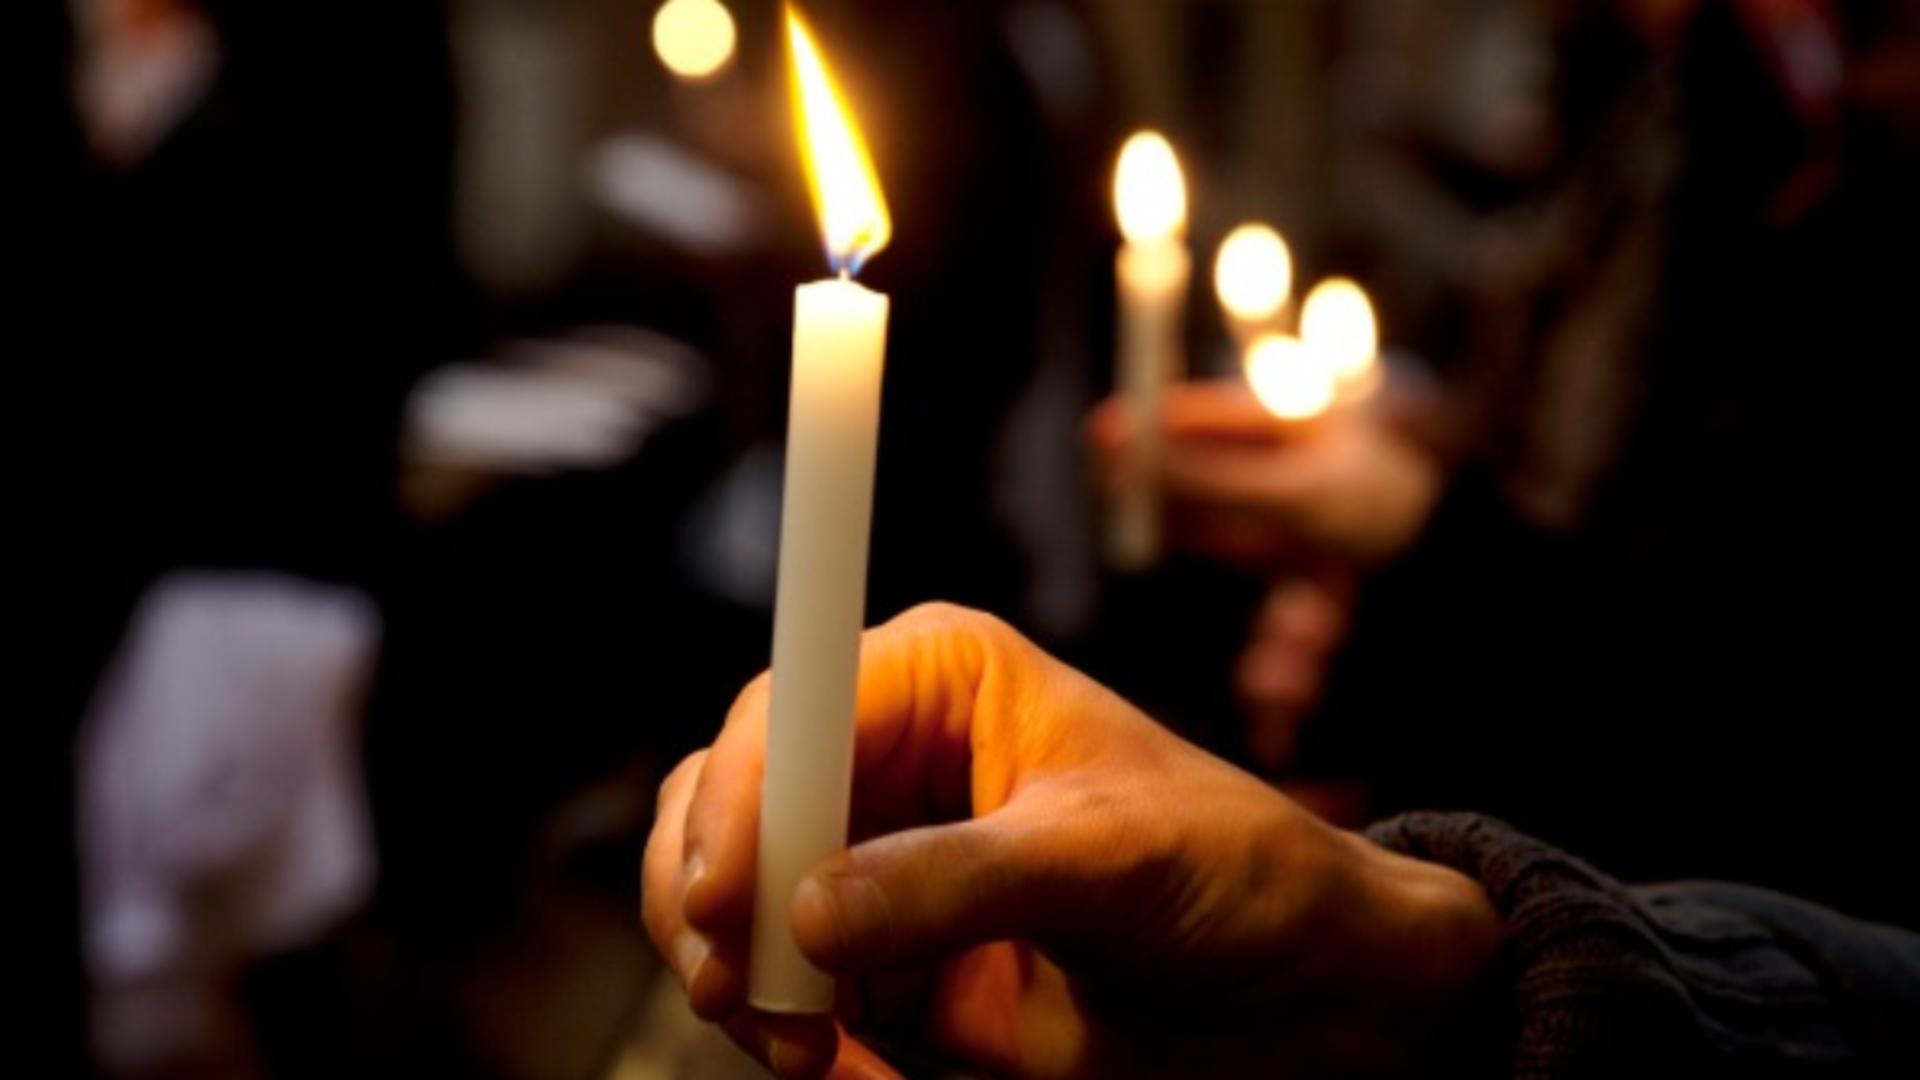 Tradiția lumânării de Paște este una dintre cele mai importante în Balcani